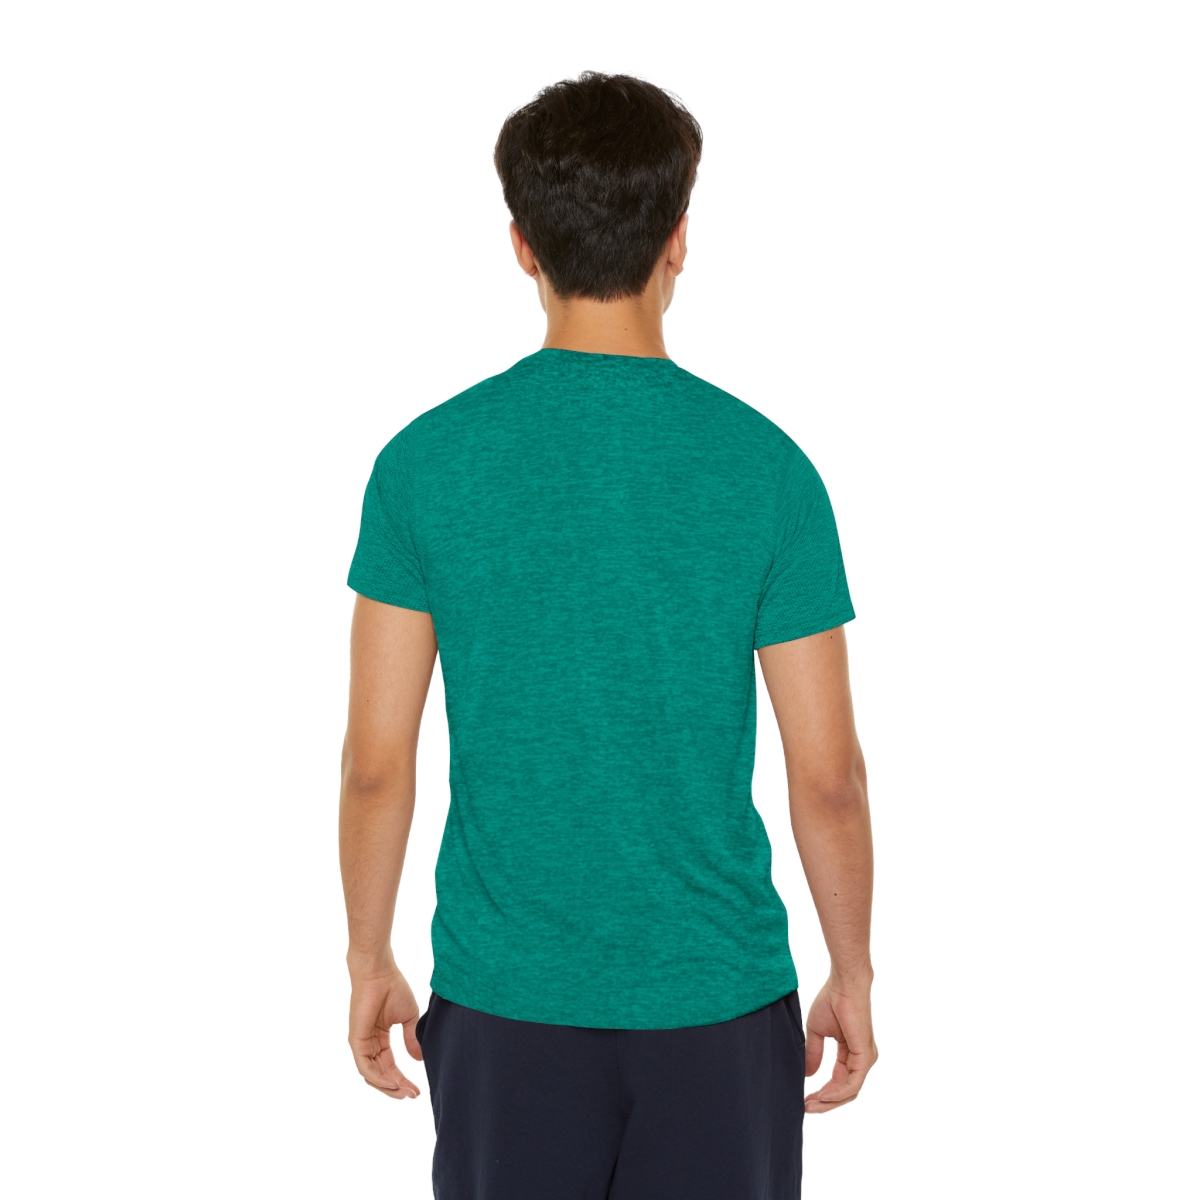 Men's Sports T-shirt product thumbnail image